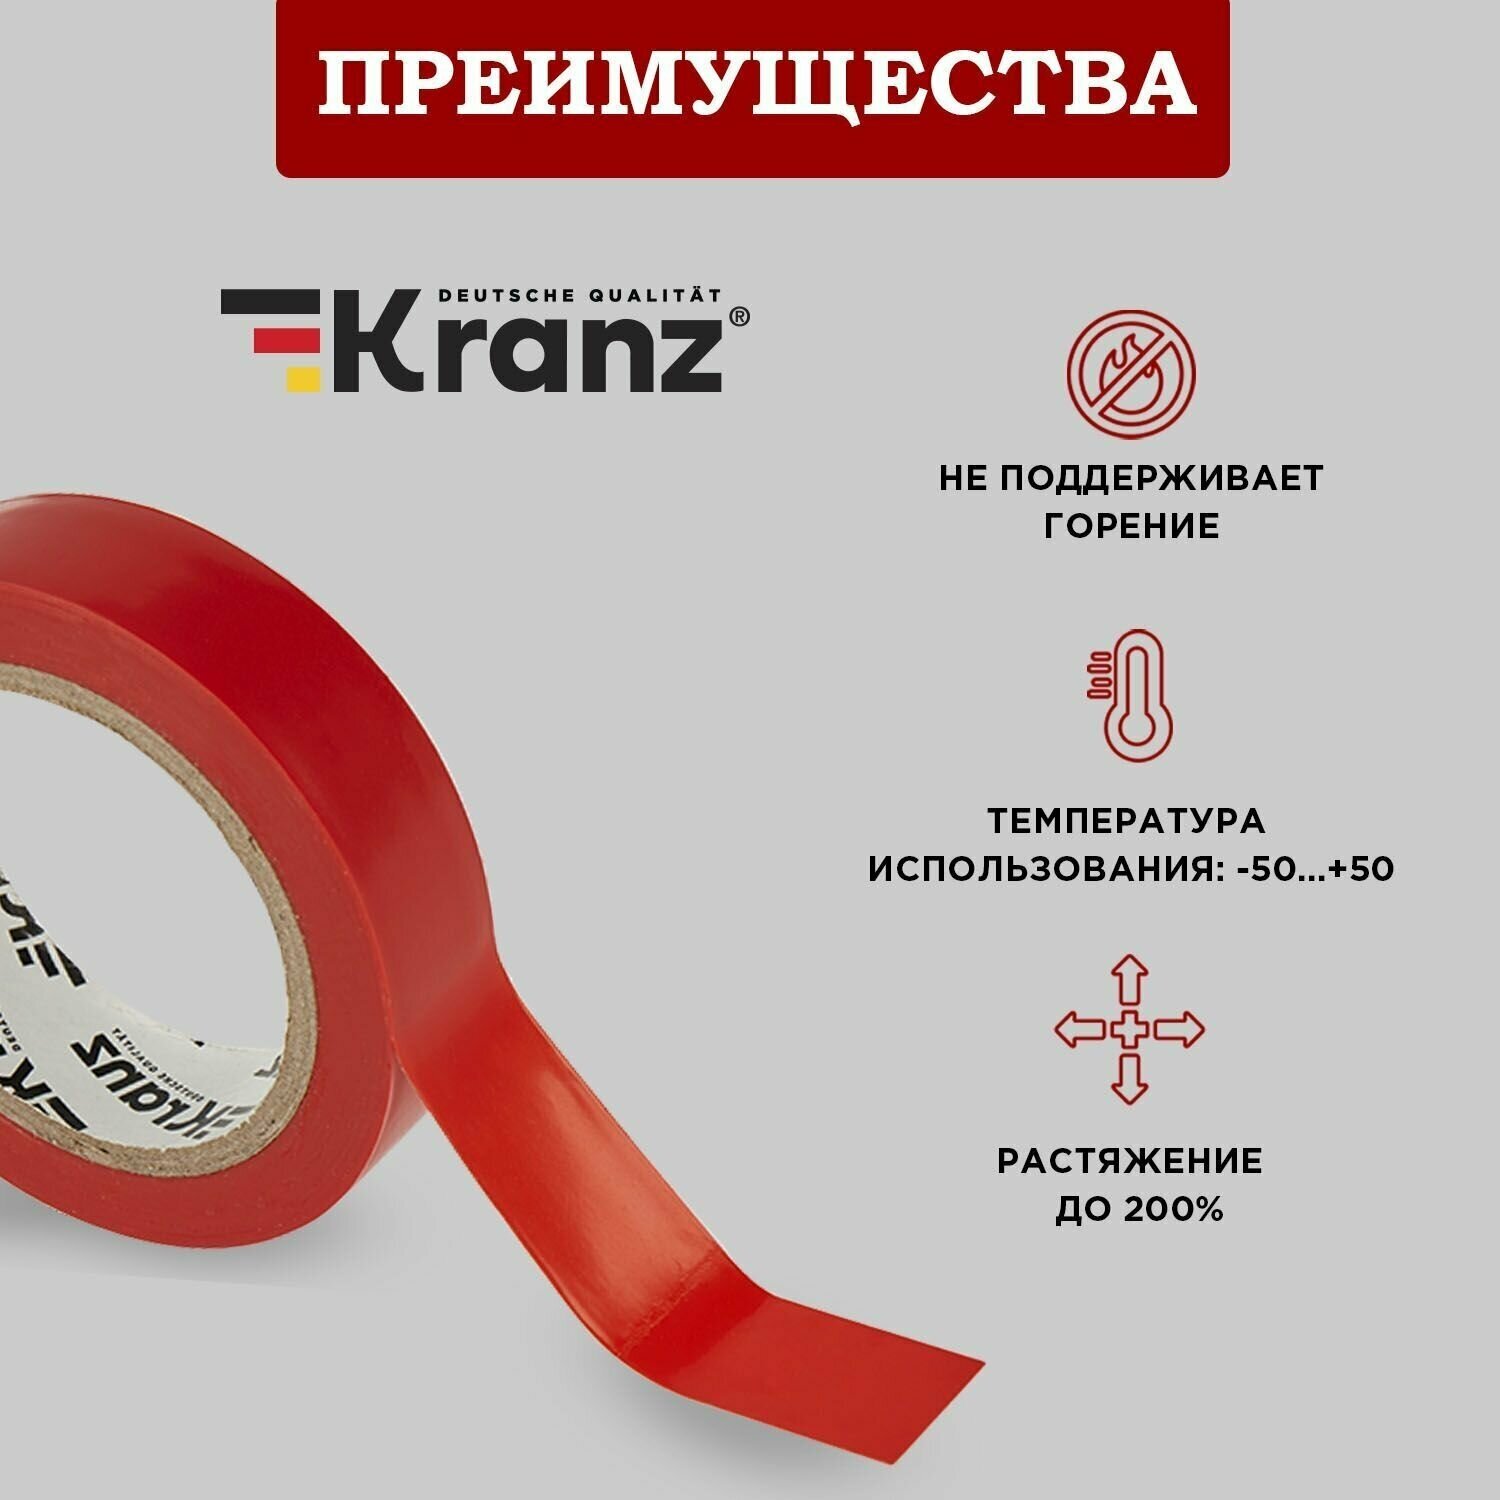 Лента Kranz электроизоляционная набор / комплект изолента красная термостойкая из ПВХ / лента цветная профессиональная для авто проводов 20 м 10 